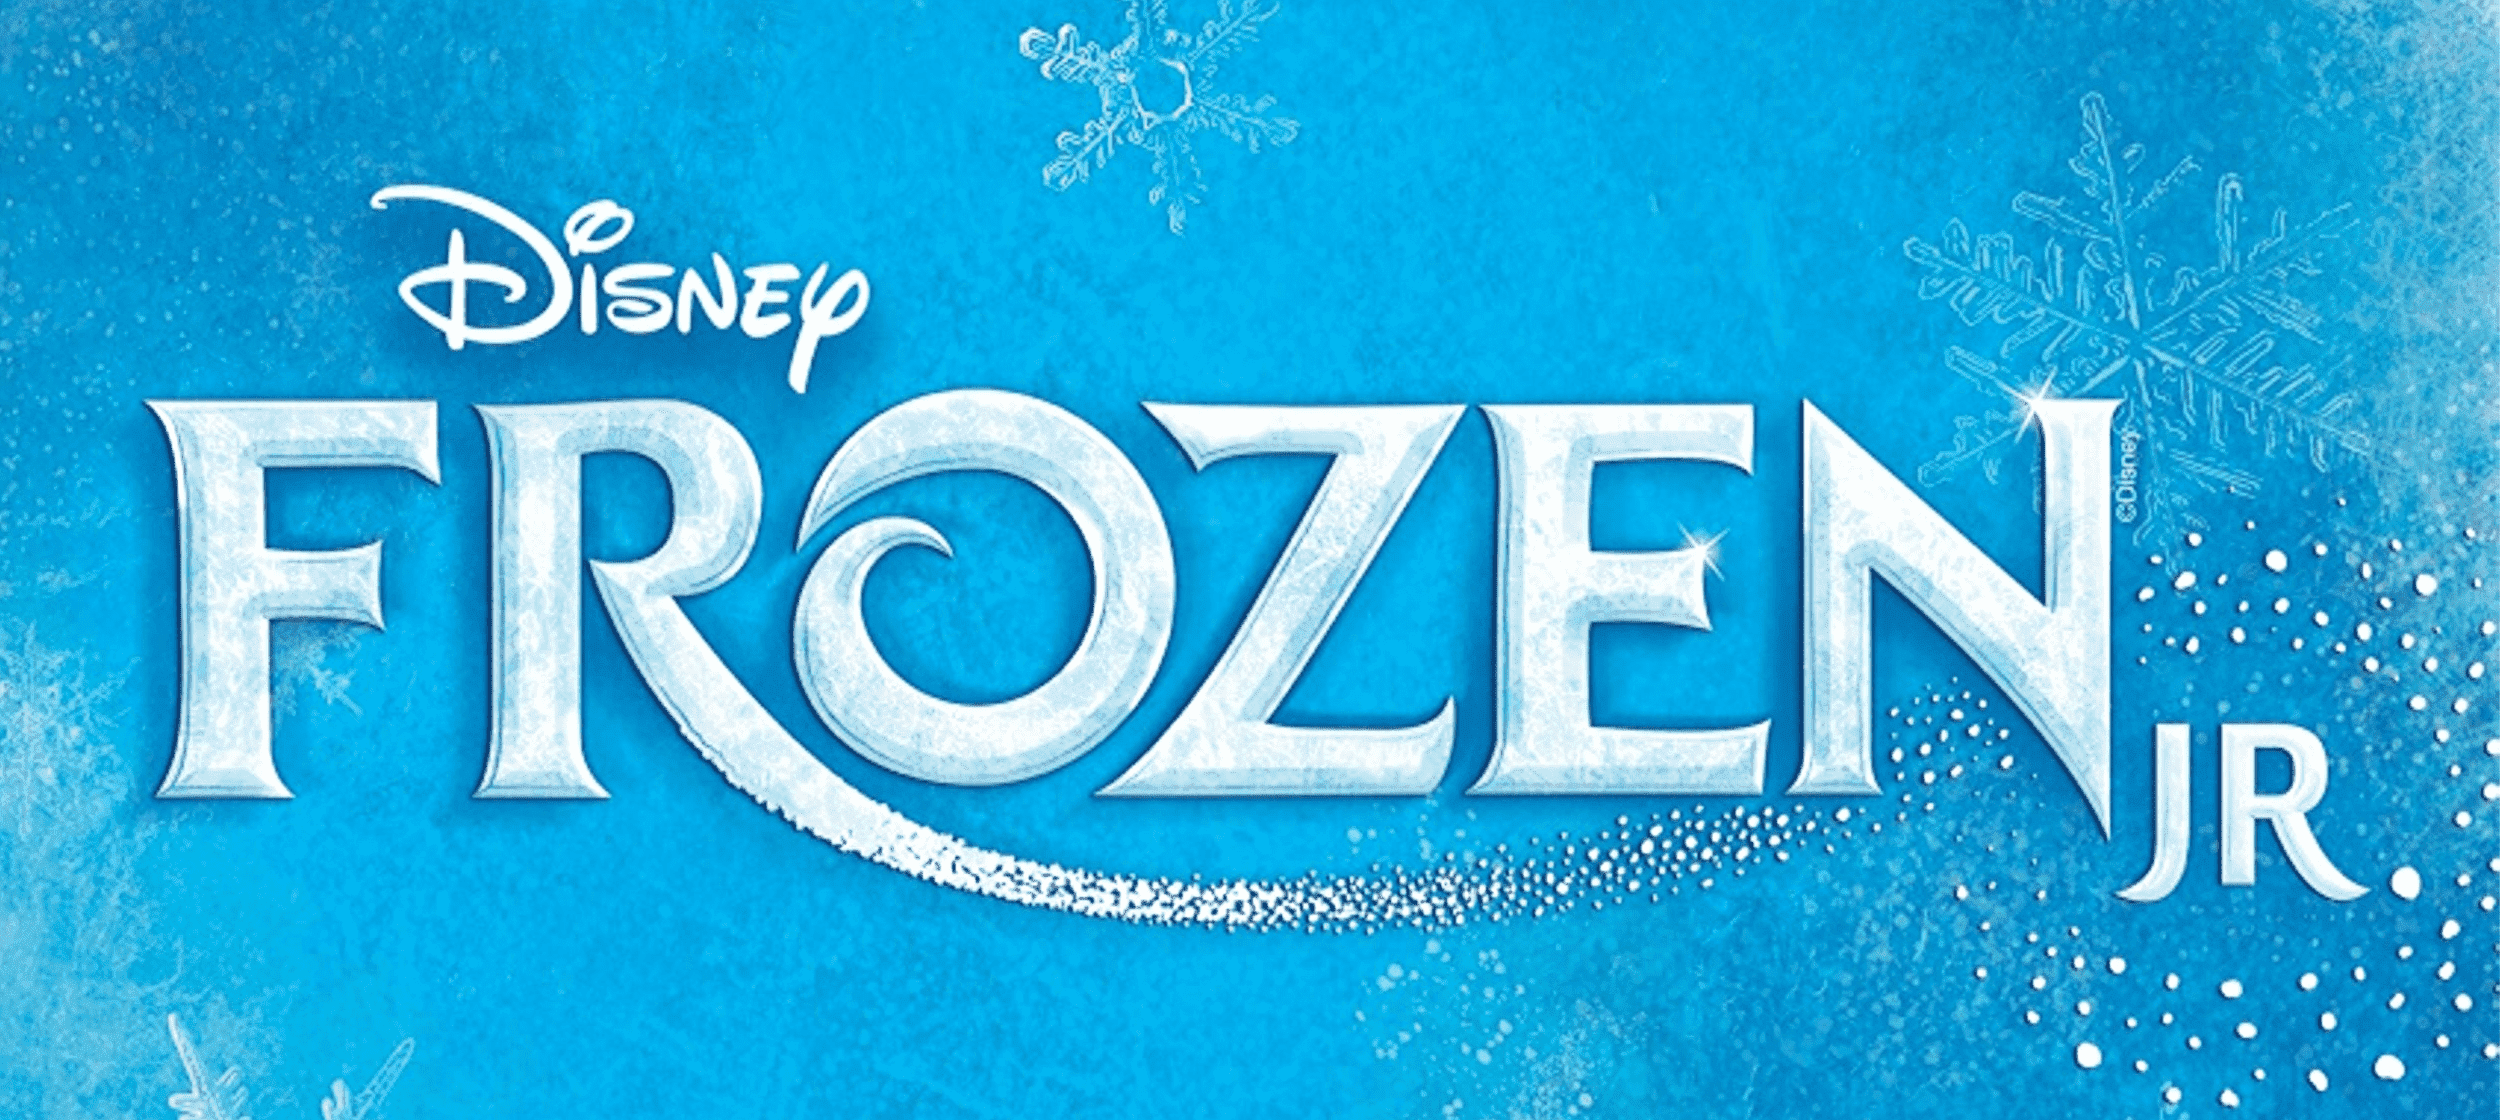 Haynes Academy: Disney's Frozen Jr.